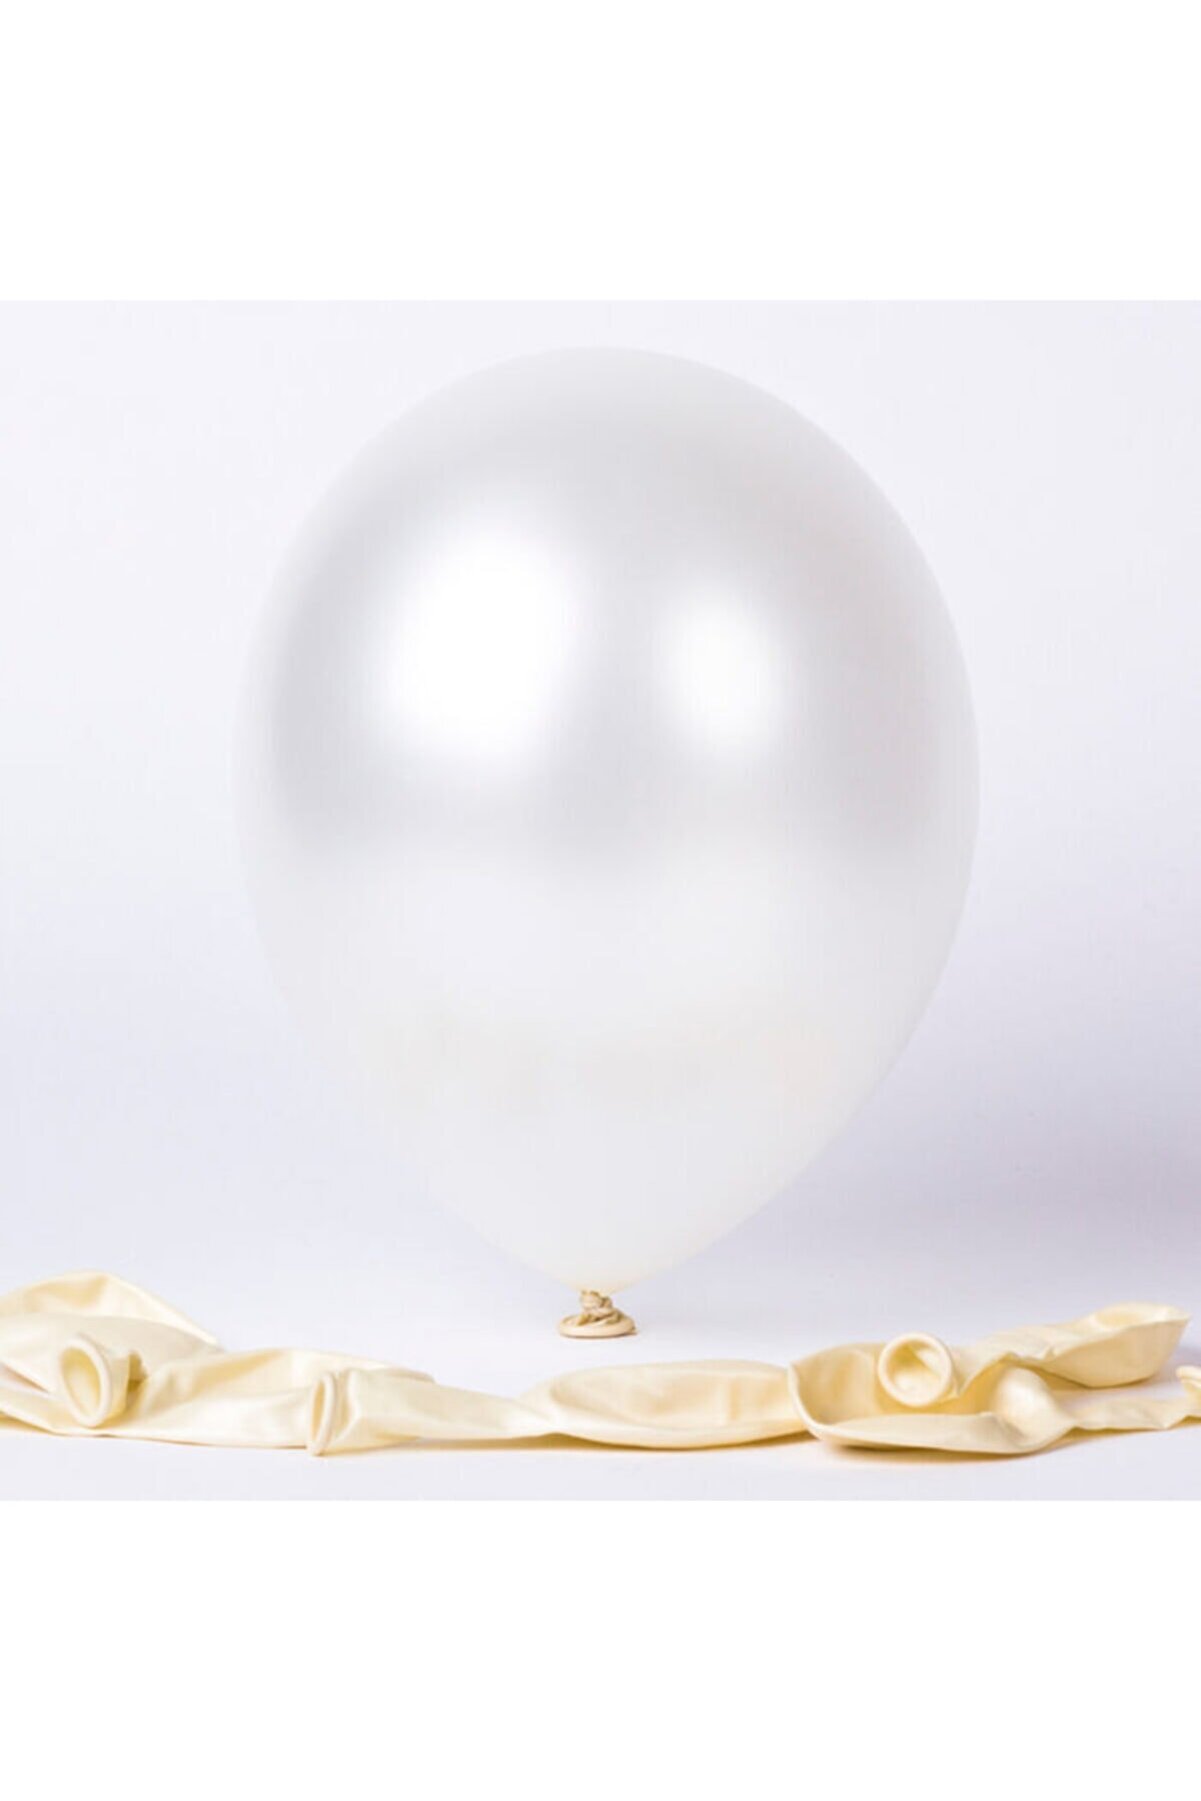 araget Metalik Latex Balon Beyaz Renk 10 Adet